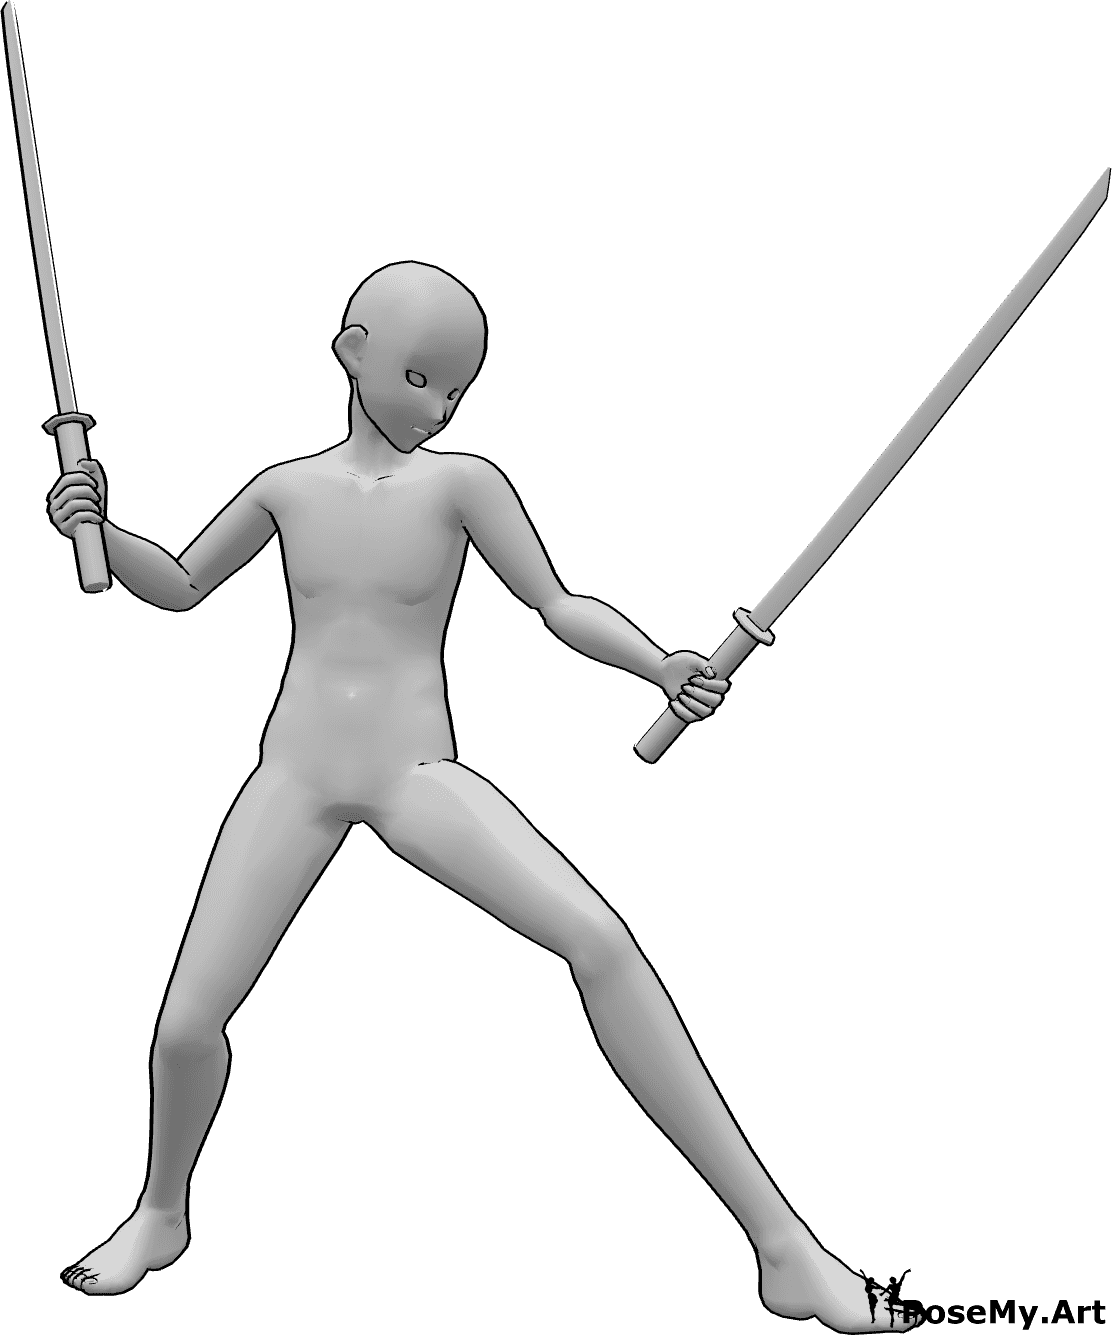 Referência de poses- Pose de ninja masculino de anime - Homem anime segurando katanas com as duas mãos, olhando para a esquerda e pronto para lutar